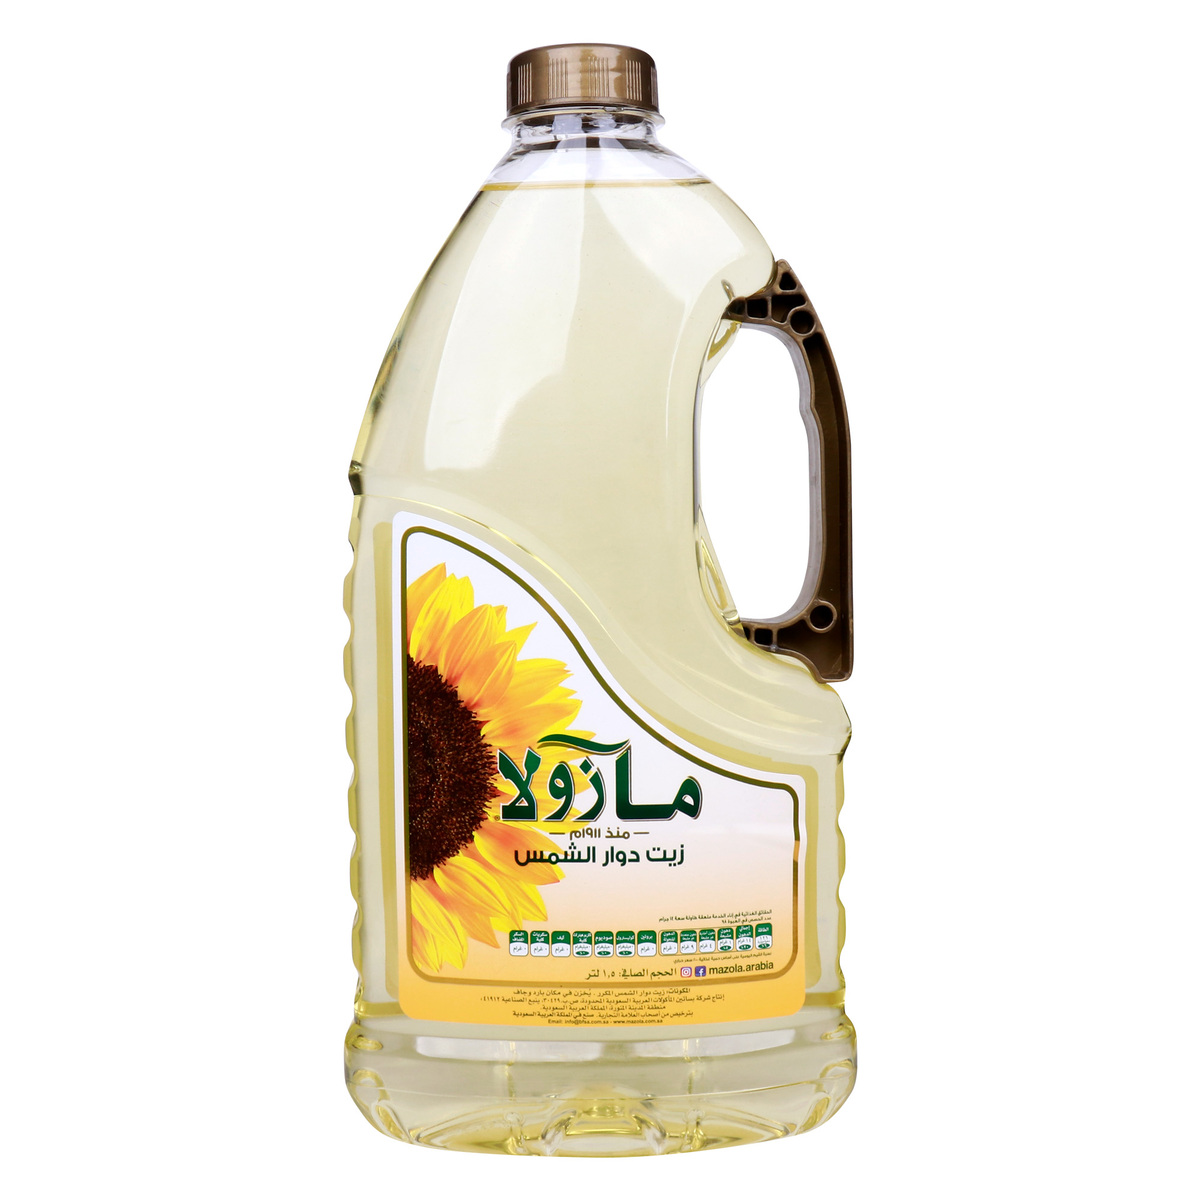 Mazola Sunflower Oil 1.5 Litres